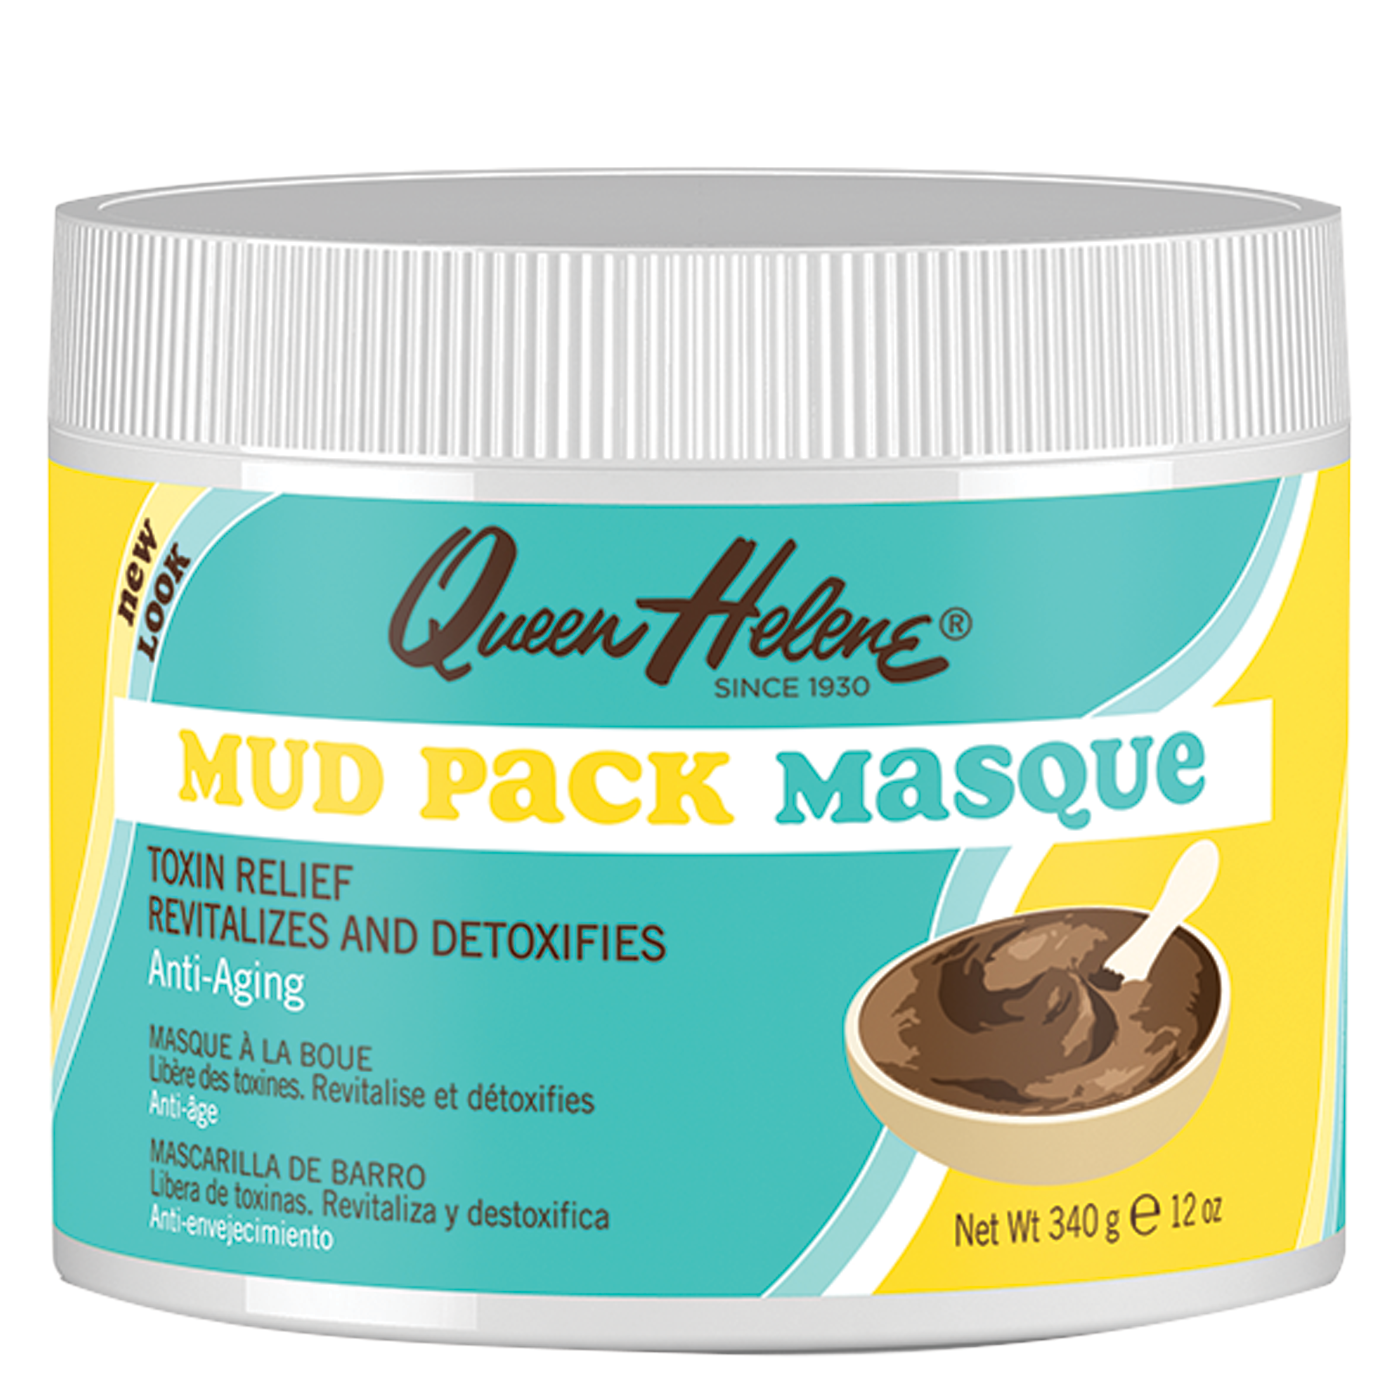 Mud Pack Masque, Anti-Aging - 12 oz.